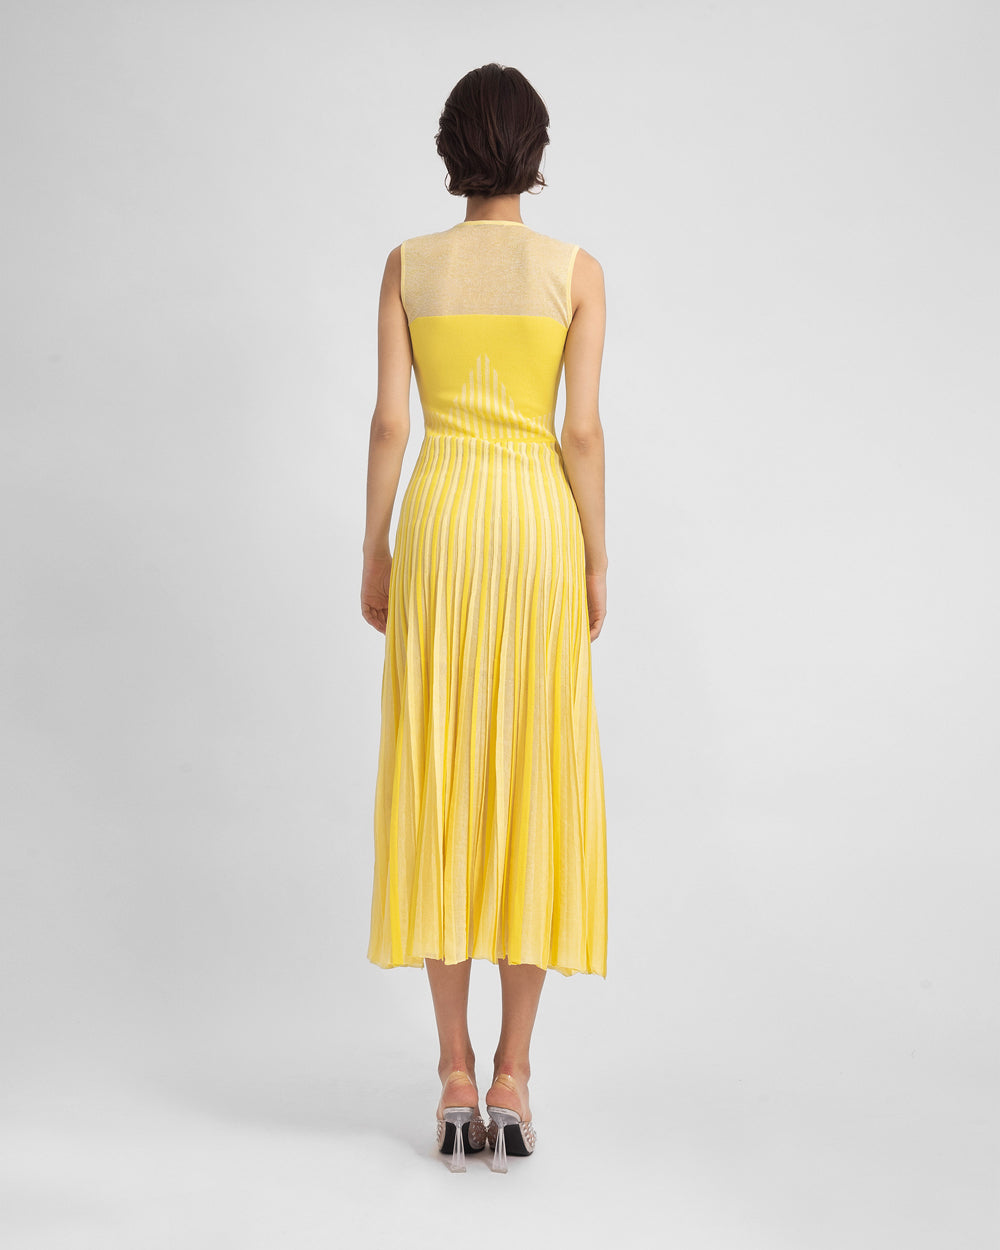 Yellow Heart Shape Design Dress